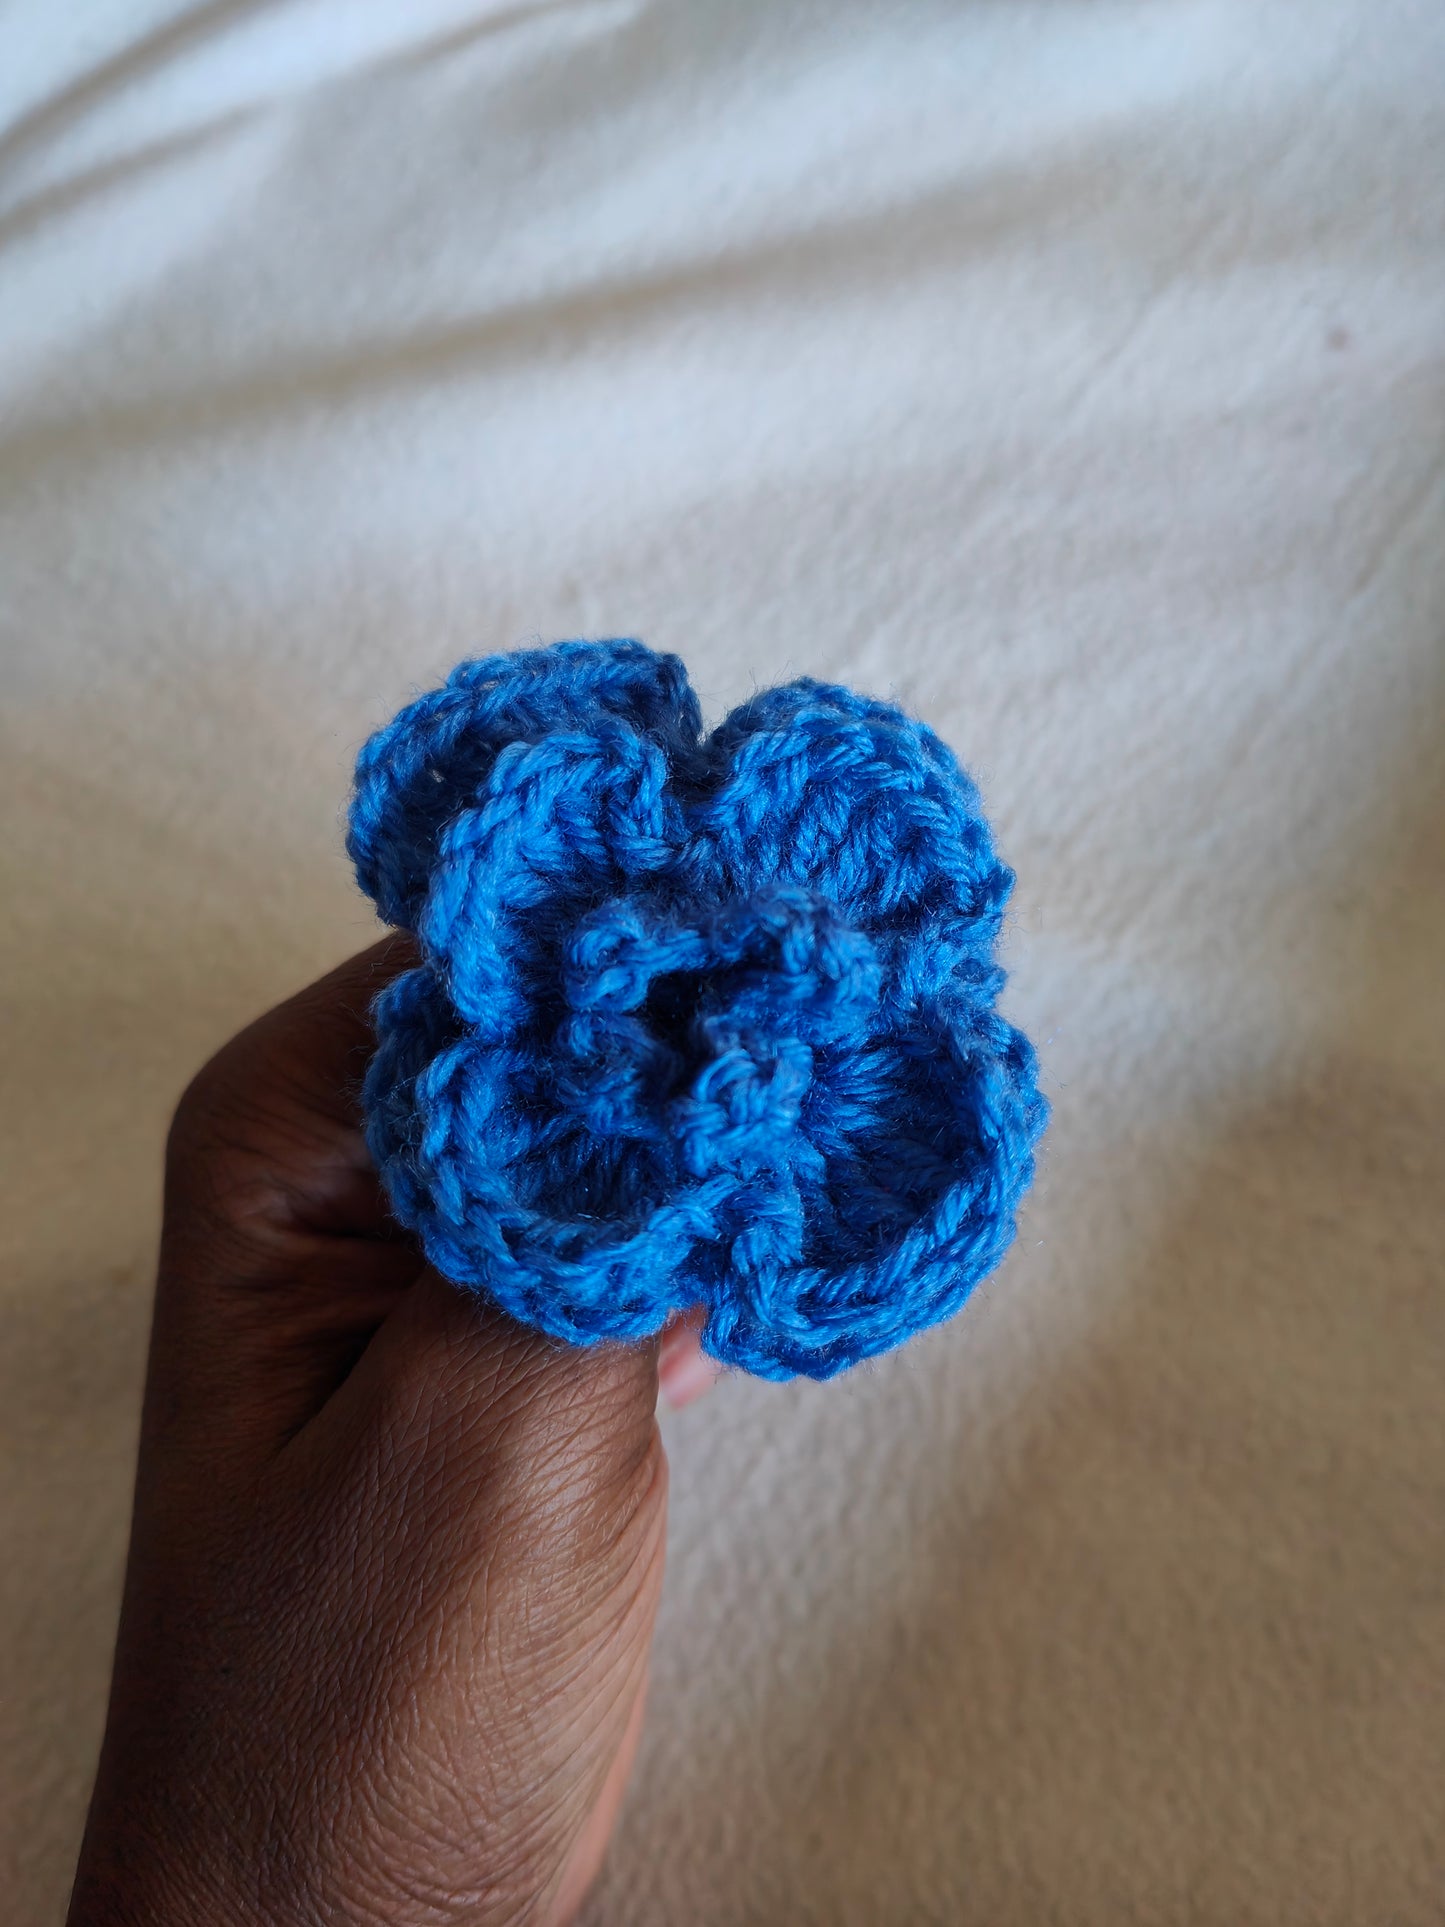 La Fleur au crochet Bleue